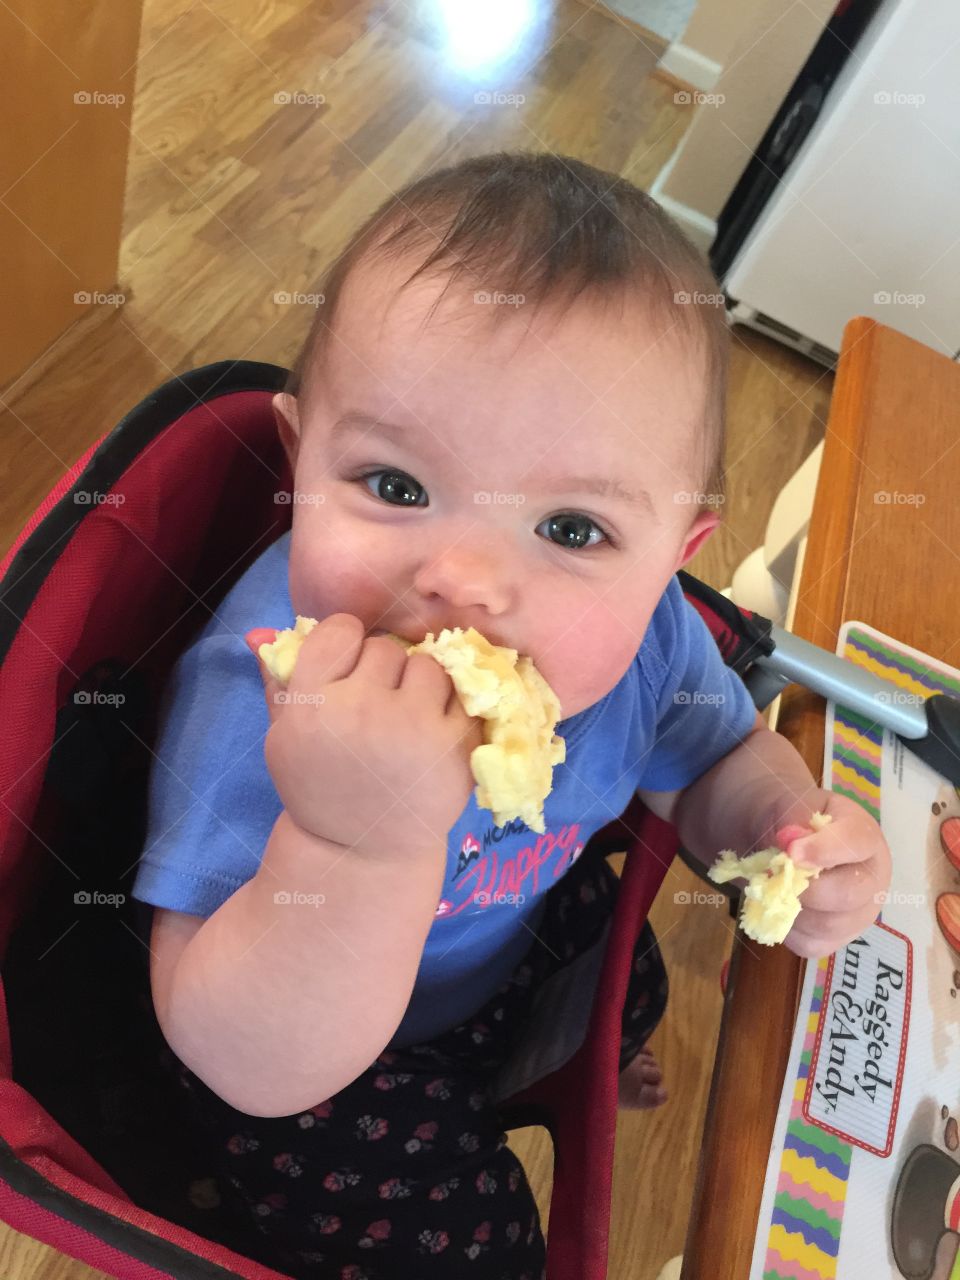 Eggo Waffles and teething baby